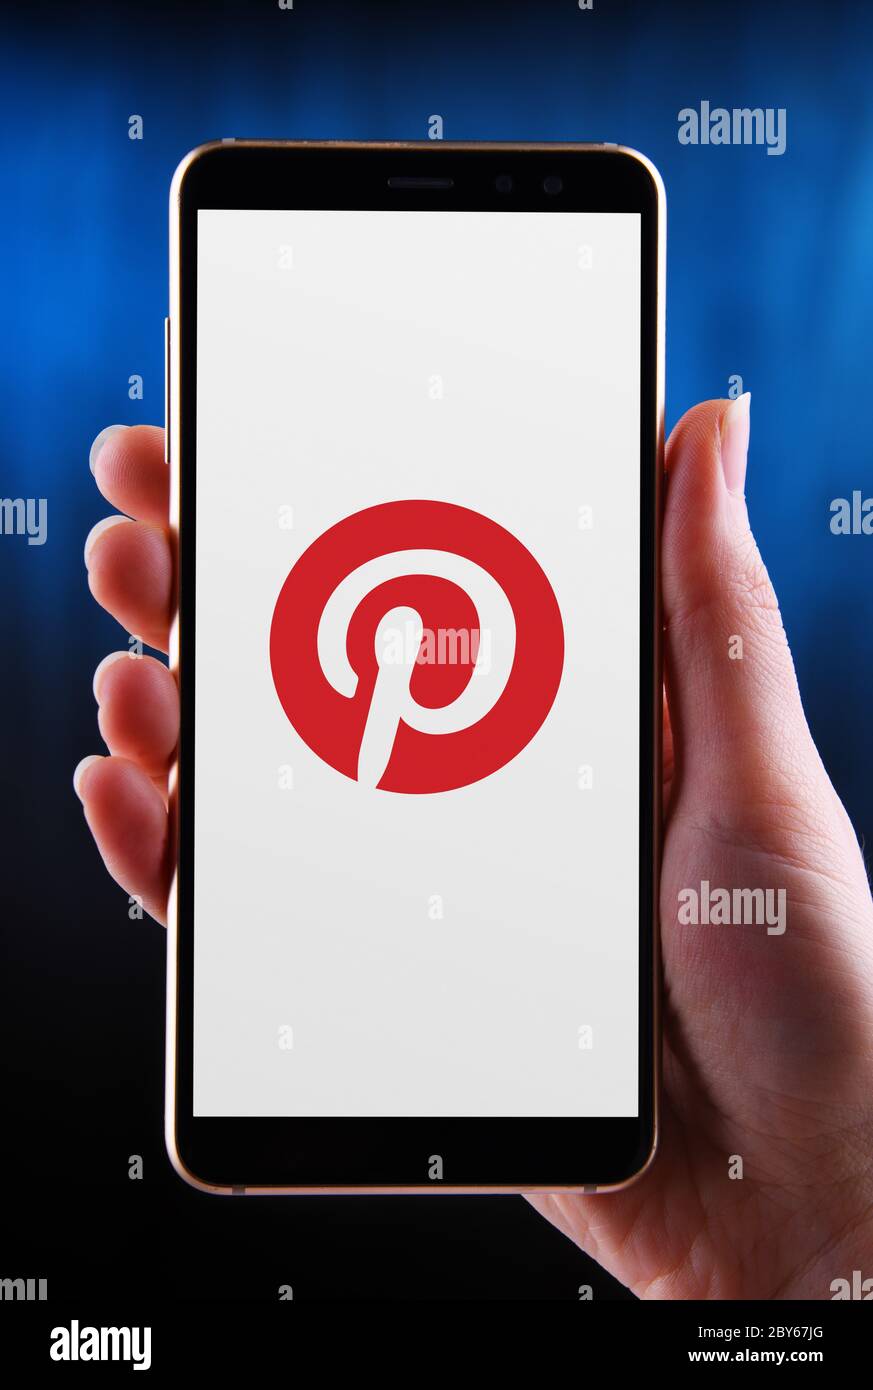 POZNAN, POL - 21 MAI 2020 : mains tenant smartphone affichant le logo de Pinterest, Inc, une société d'applications mobiles et Web de médias sociaux Banque D'Images